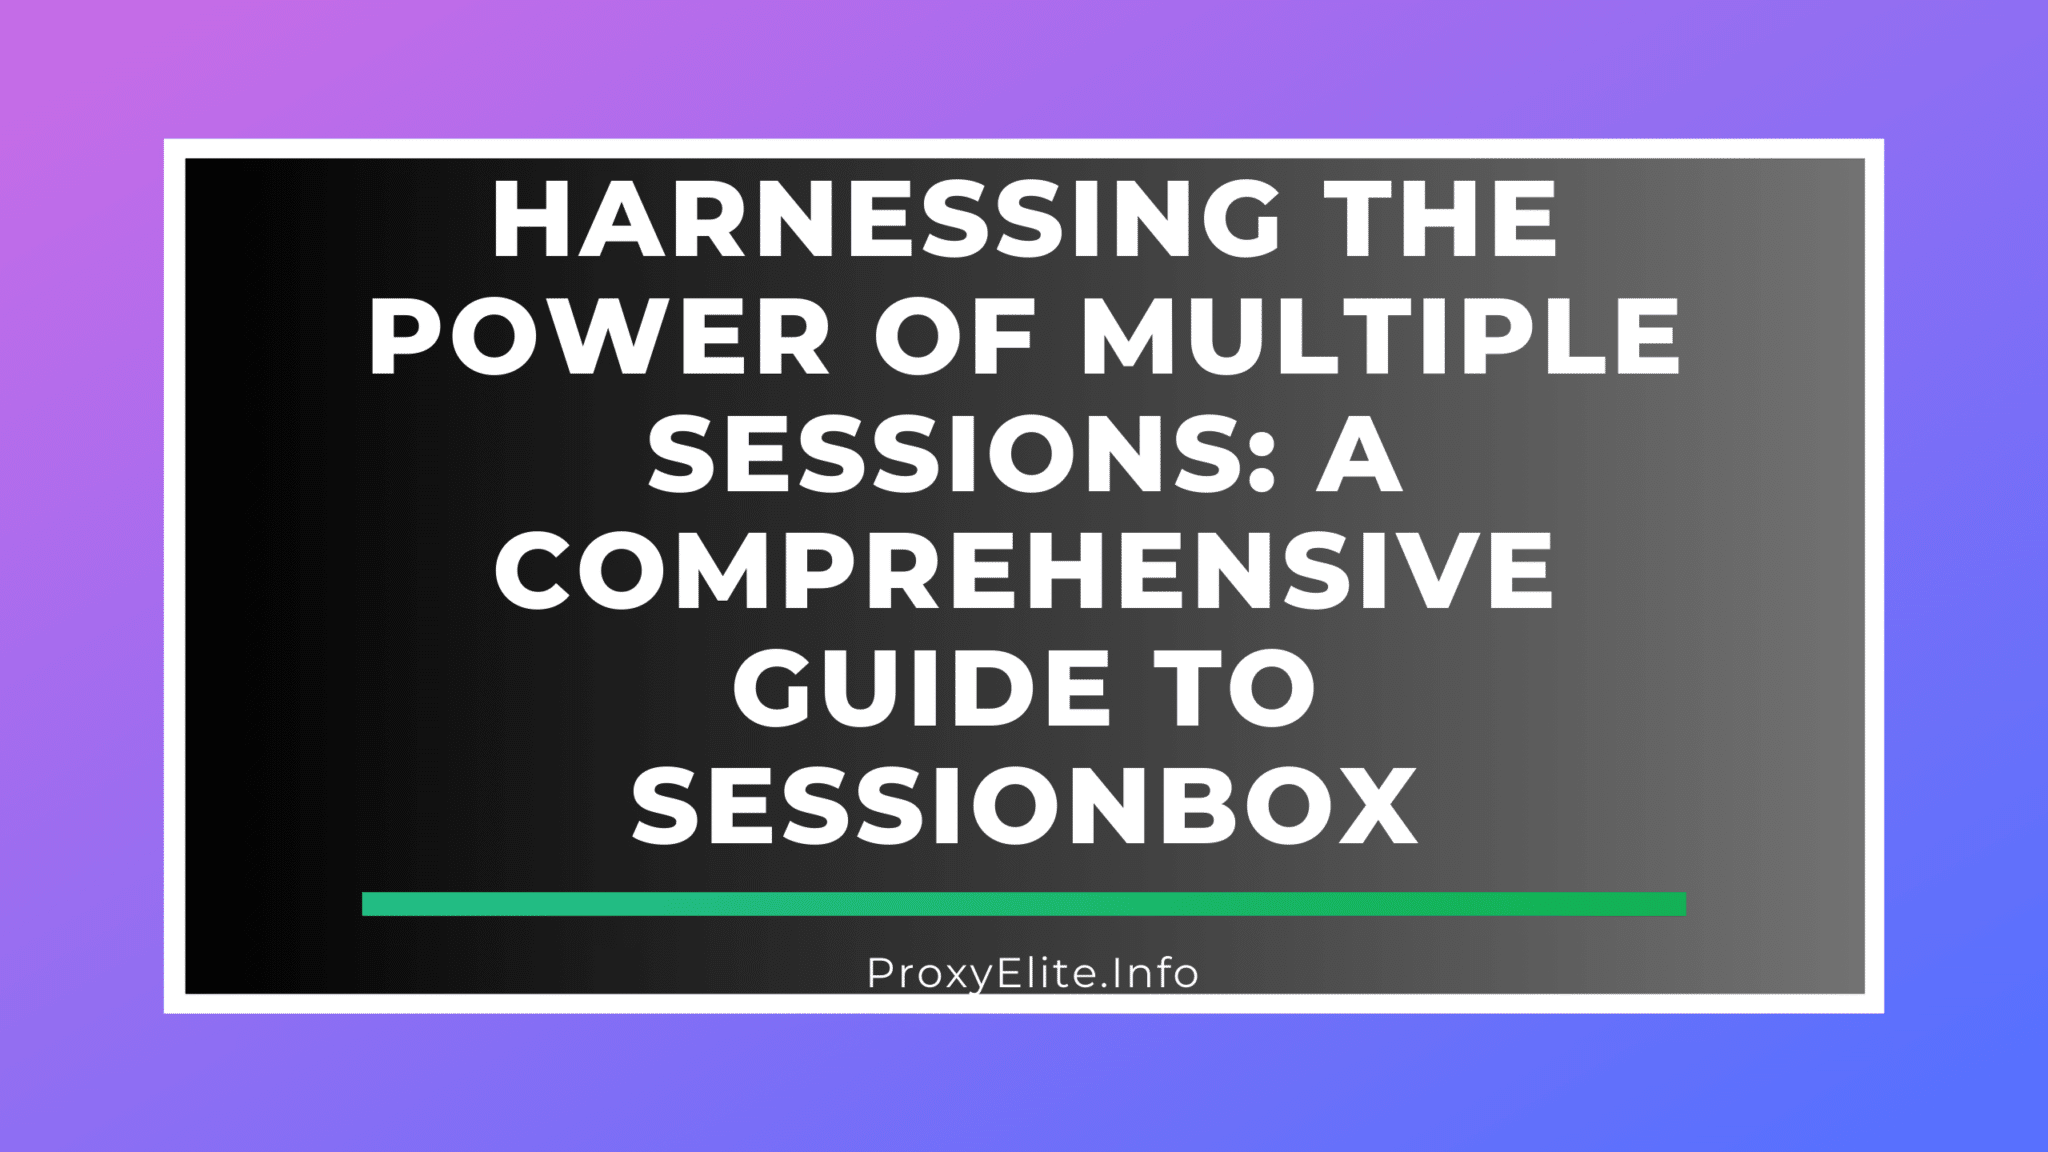 Khai thác sức mạnh của nhiều phiên: Hướng dẫn toàn diện về SessionBox